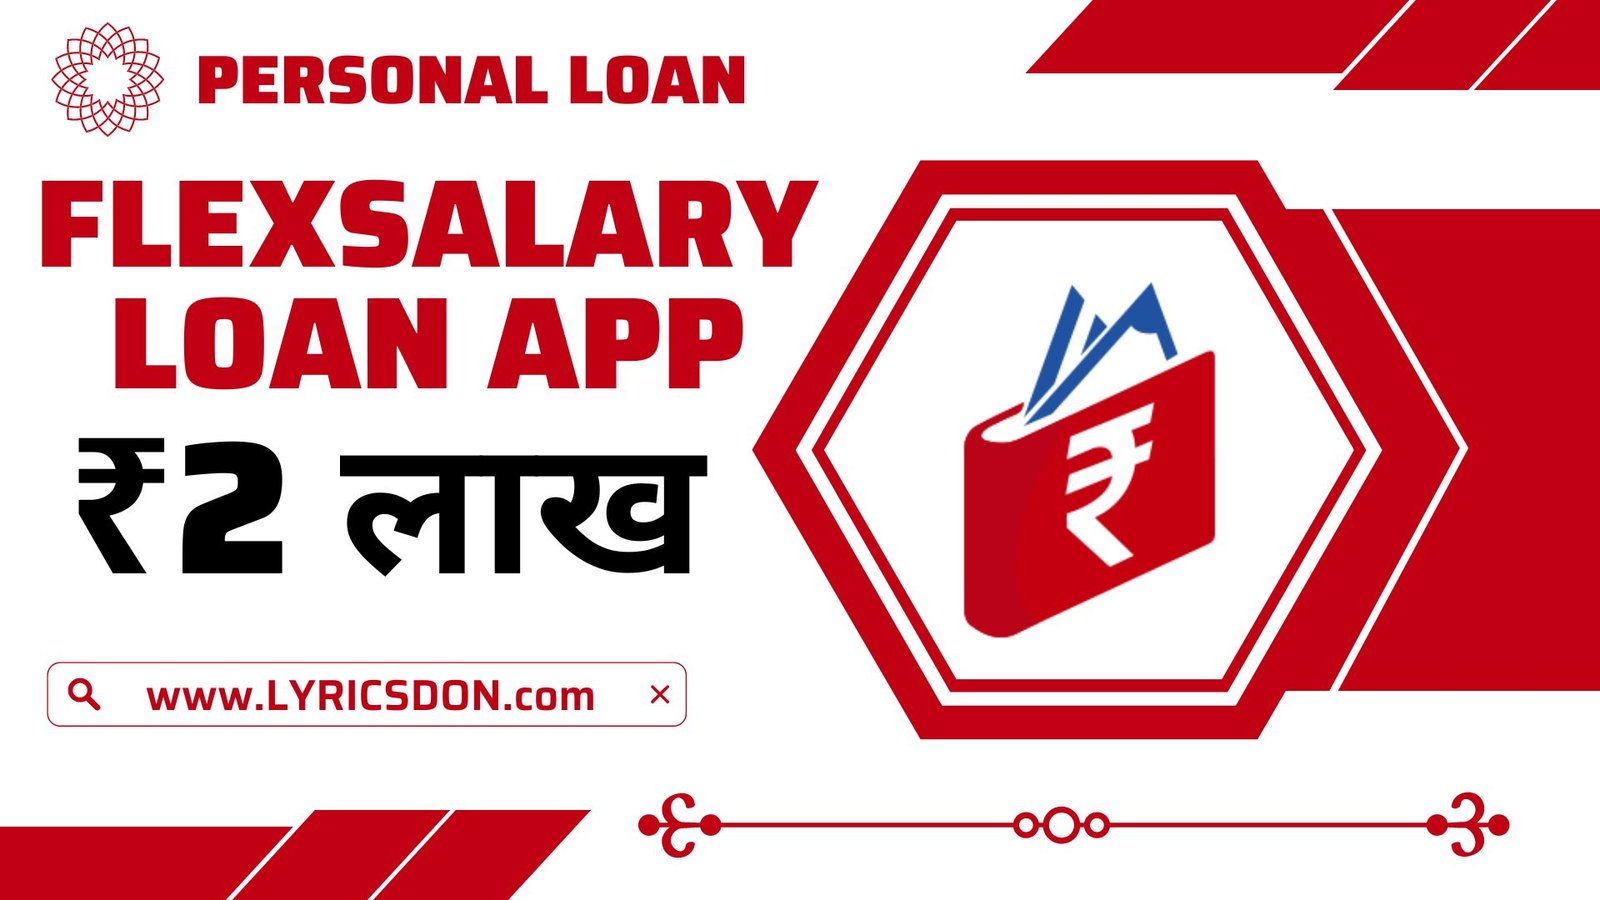 FlexSalary Loan App Loan Amount